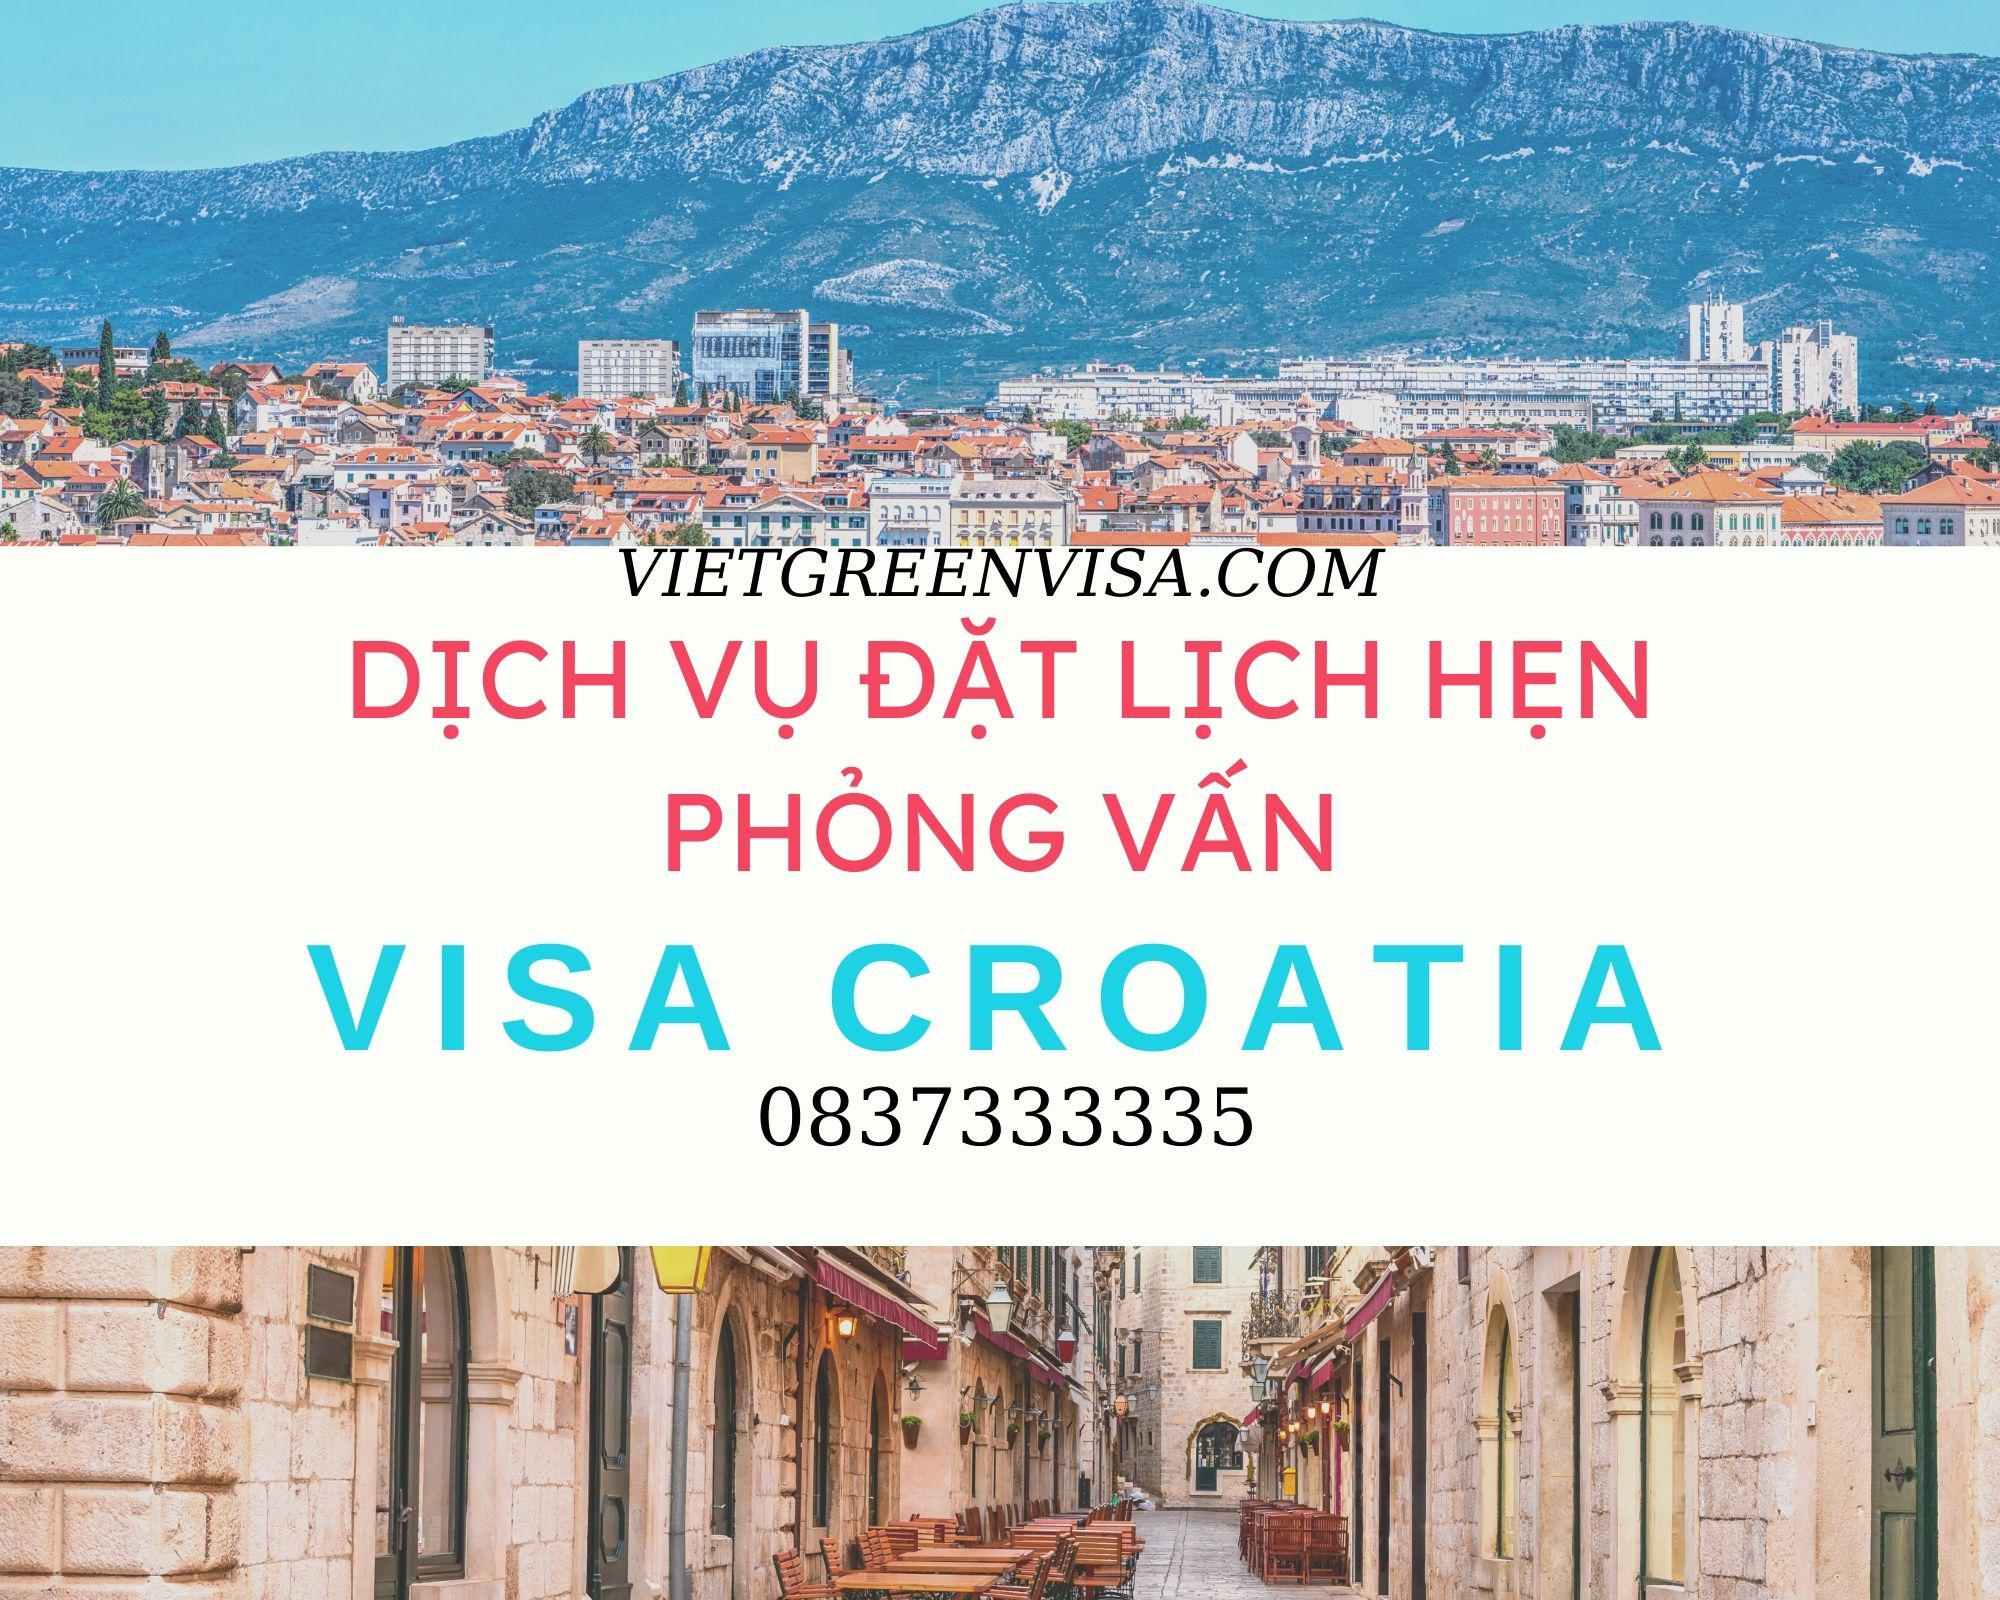 Đặt lịch hẹn phỏng vấn xin visa Croatia nhanh chóng